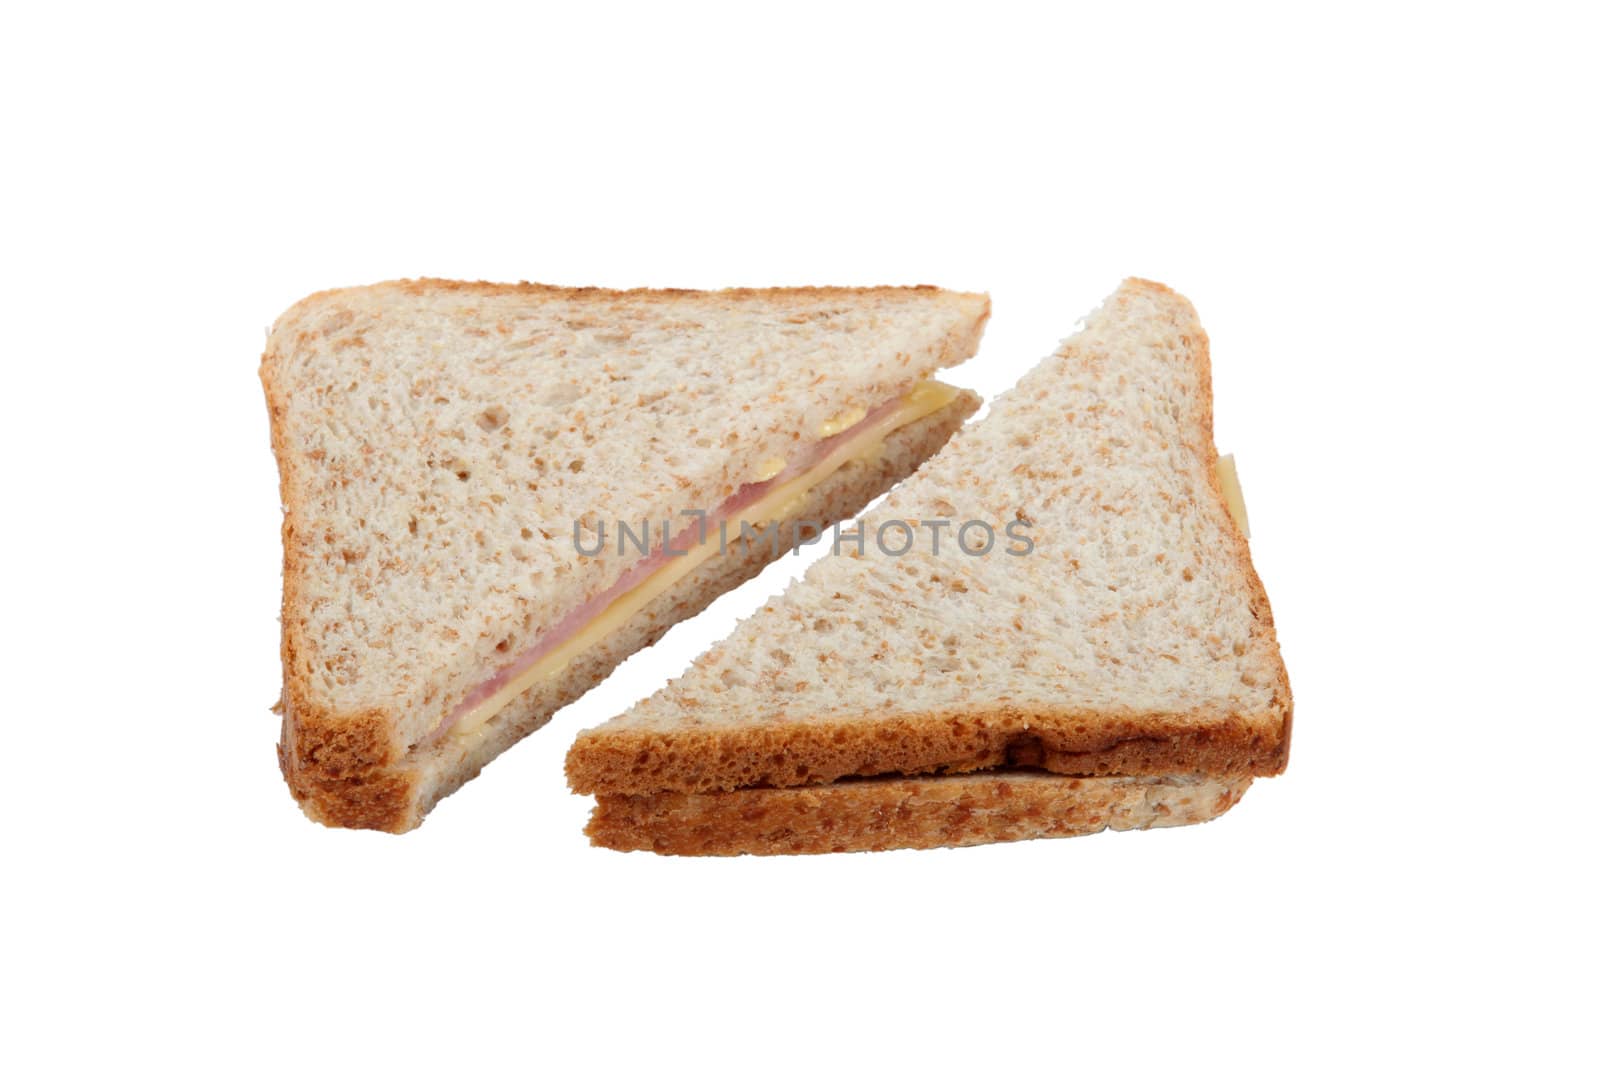 Triangle sandwiches